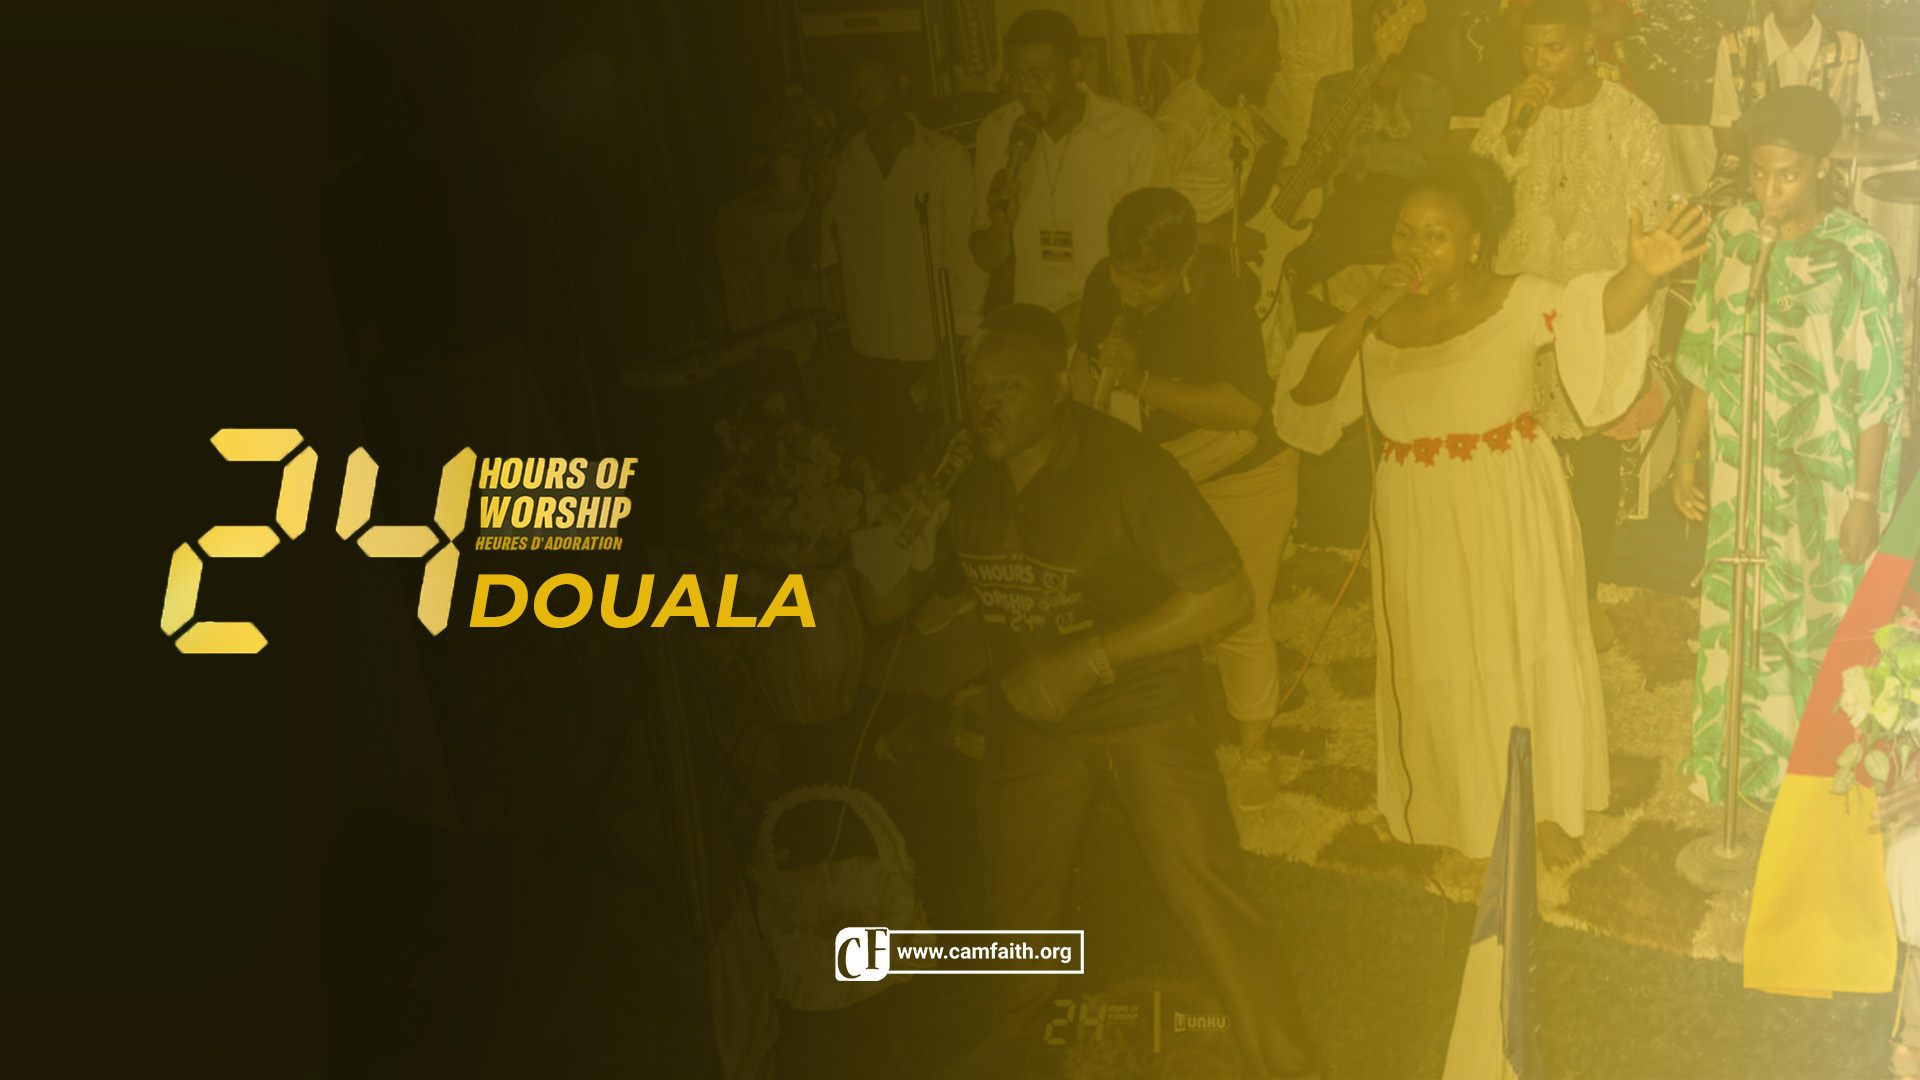 24 heures d'adoration : l'acte 1 Douala ouvre le bal de la saison 4